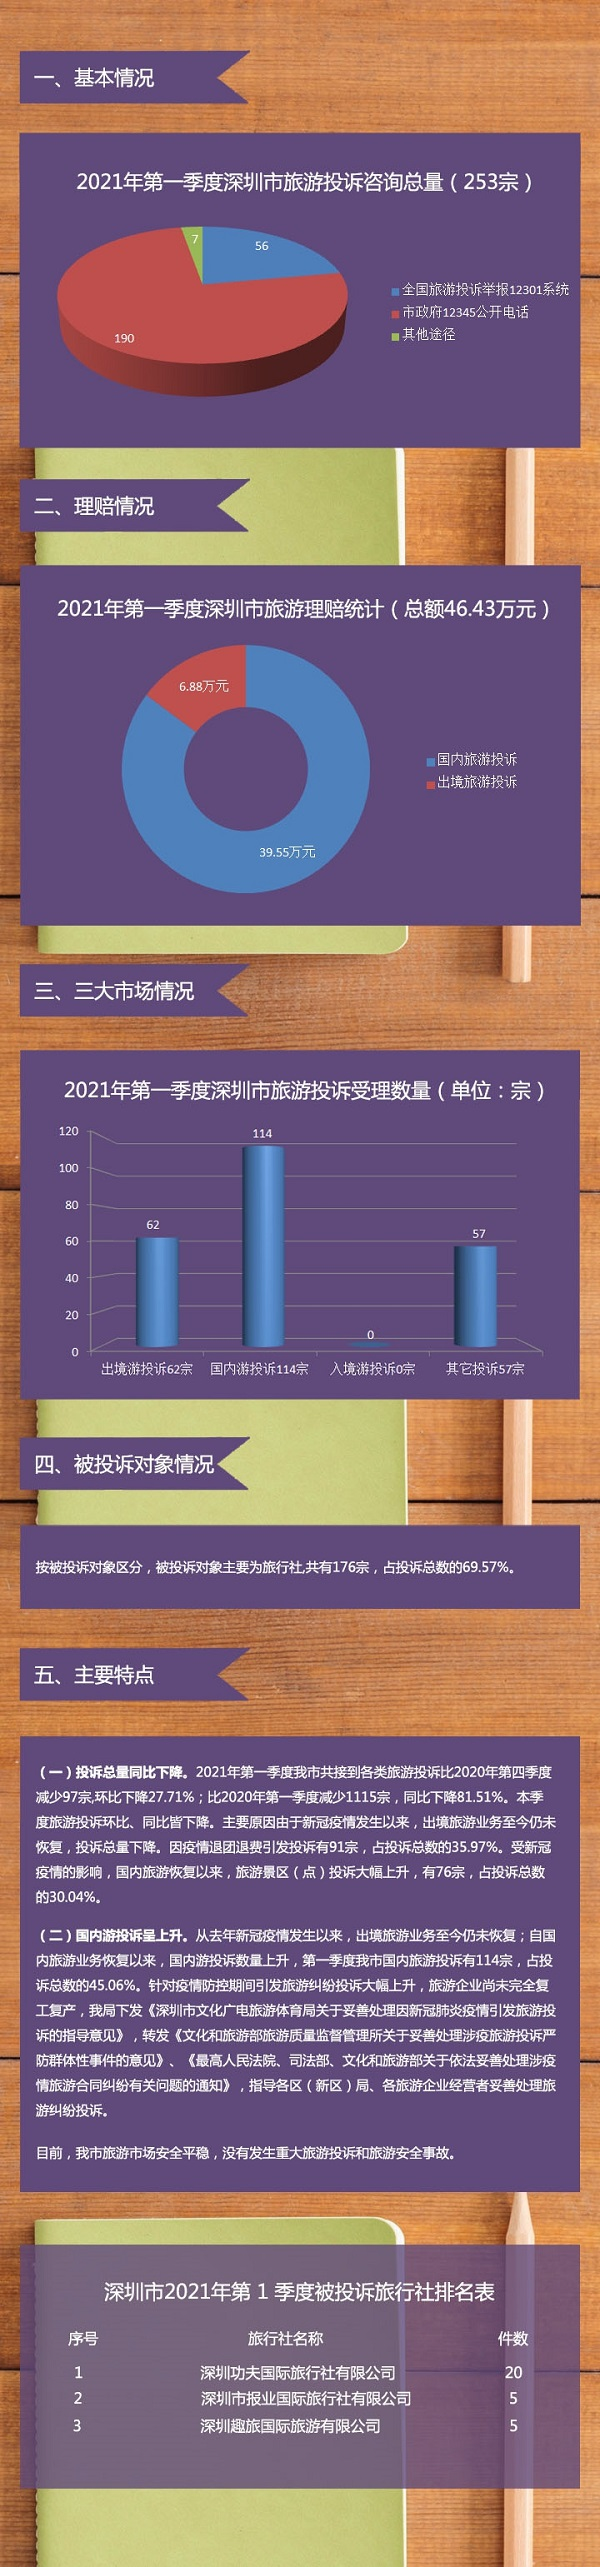 【图解】深圳市旅游监管简报（2021年第一季度）